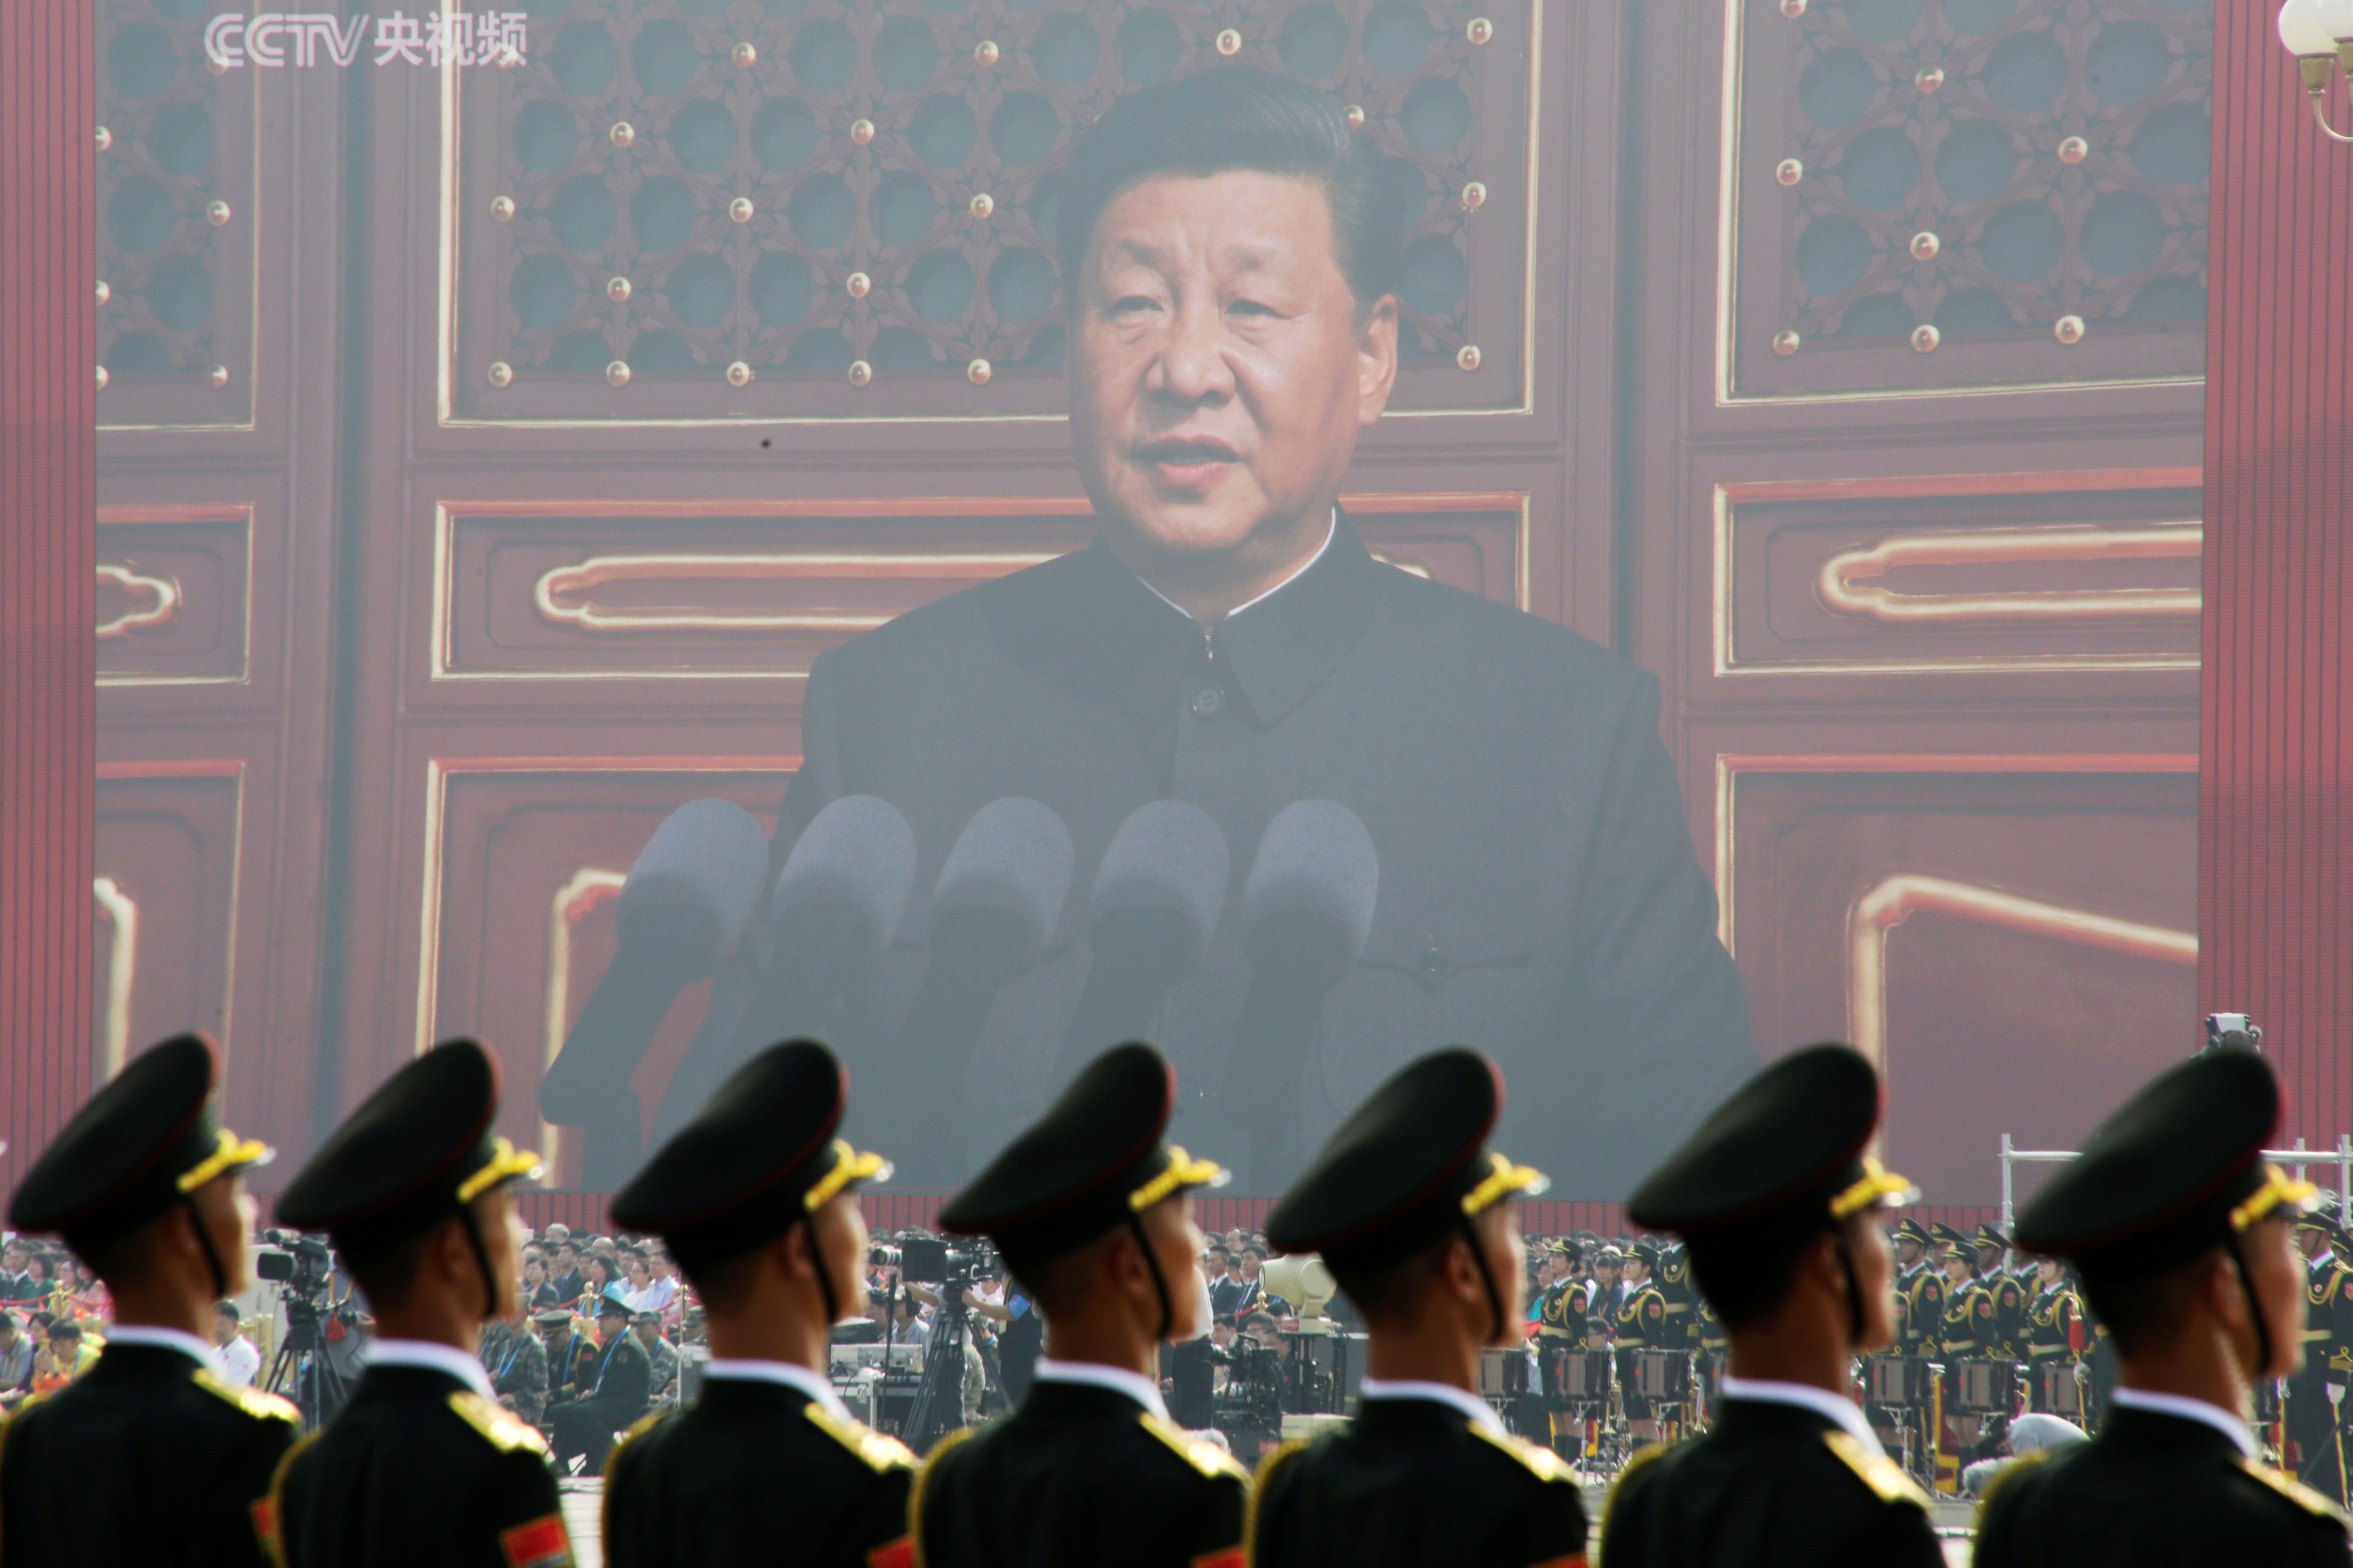 El régimen de Xi Jinping amenazó con “aplastar” cualquier intento de independencia de Taiwán (REUTERS/Jason Lee)